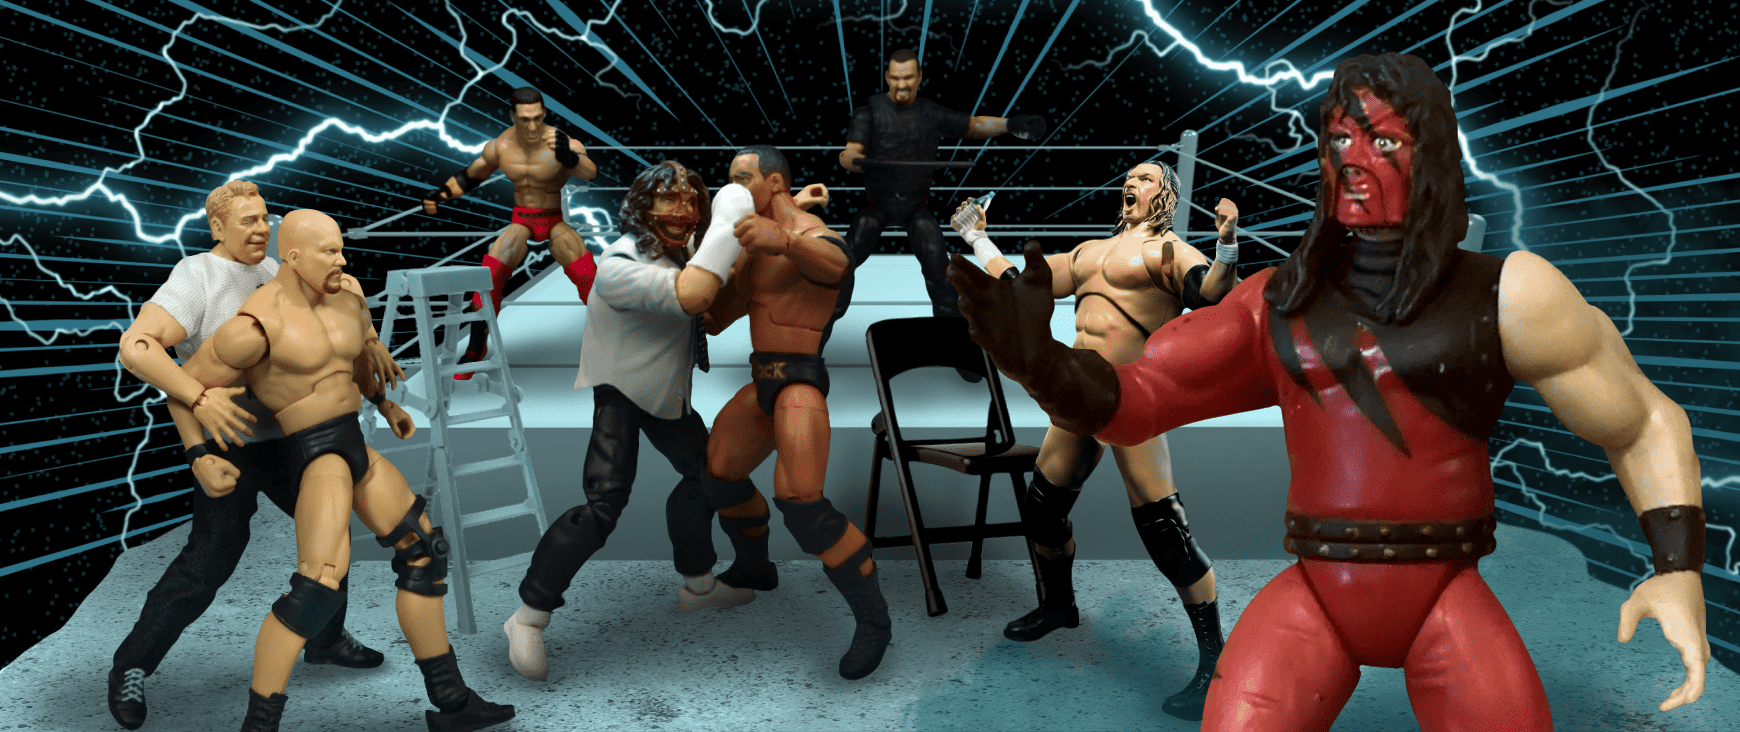 WWF wrestling action figures